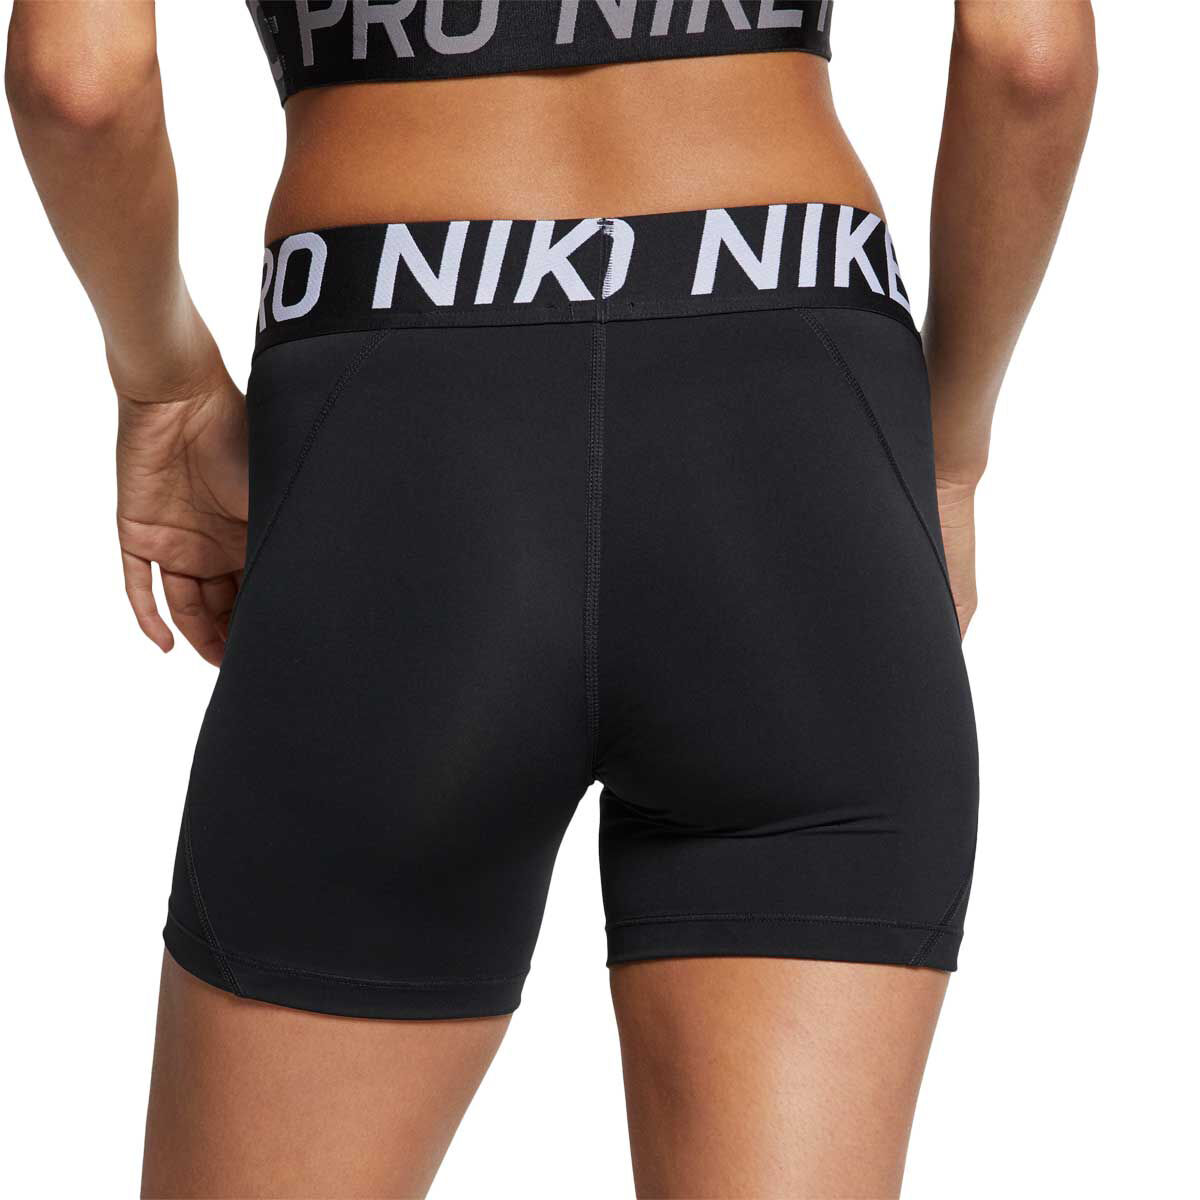 nike 5 inch shorts women's